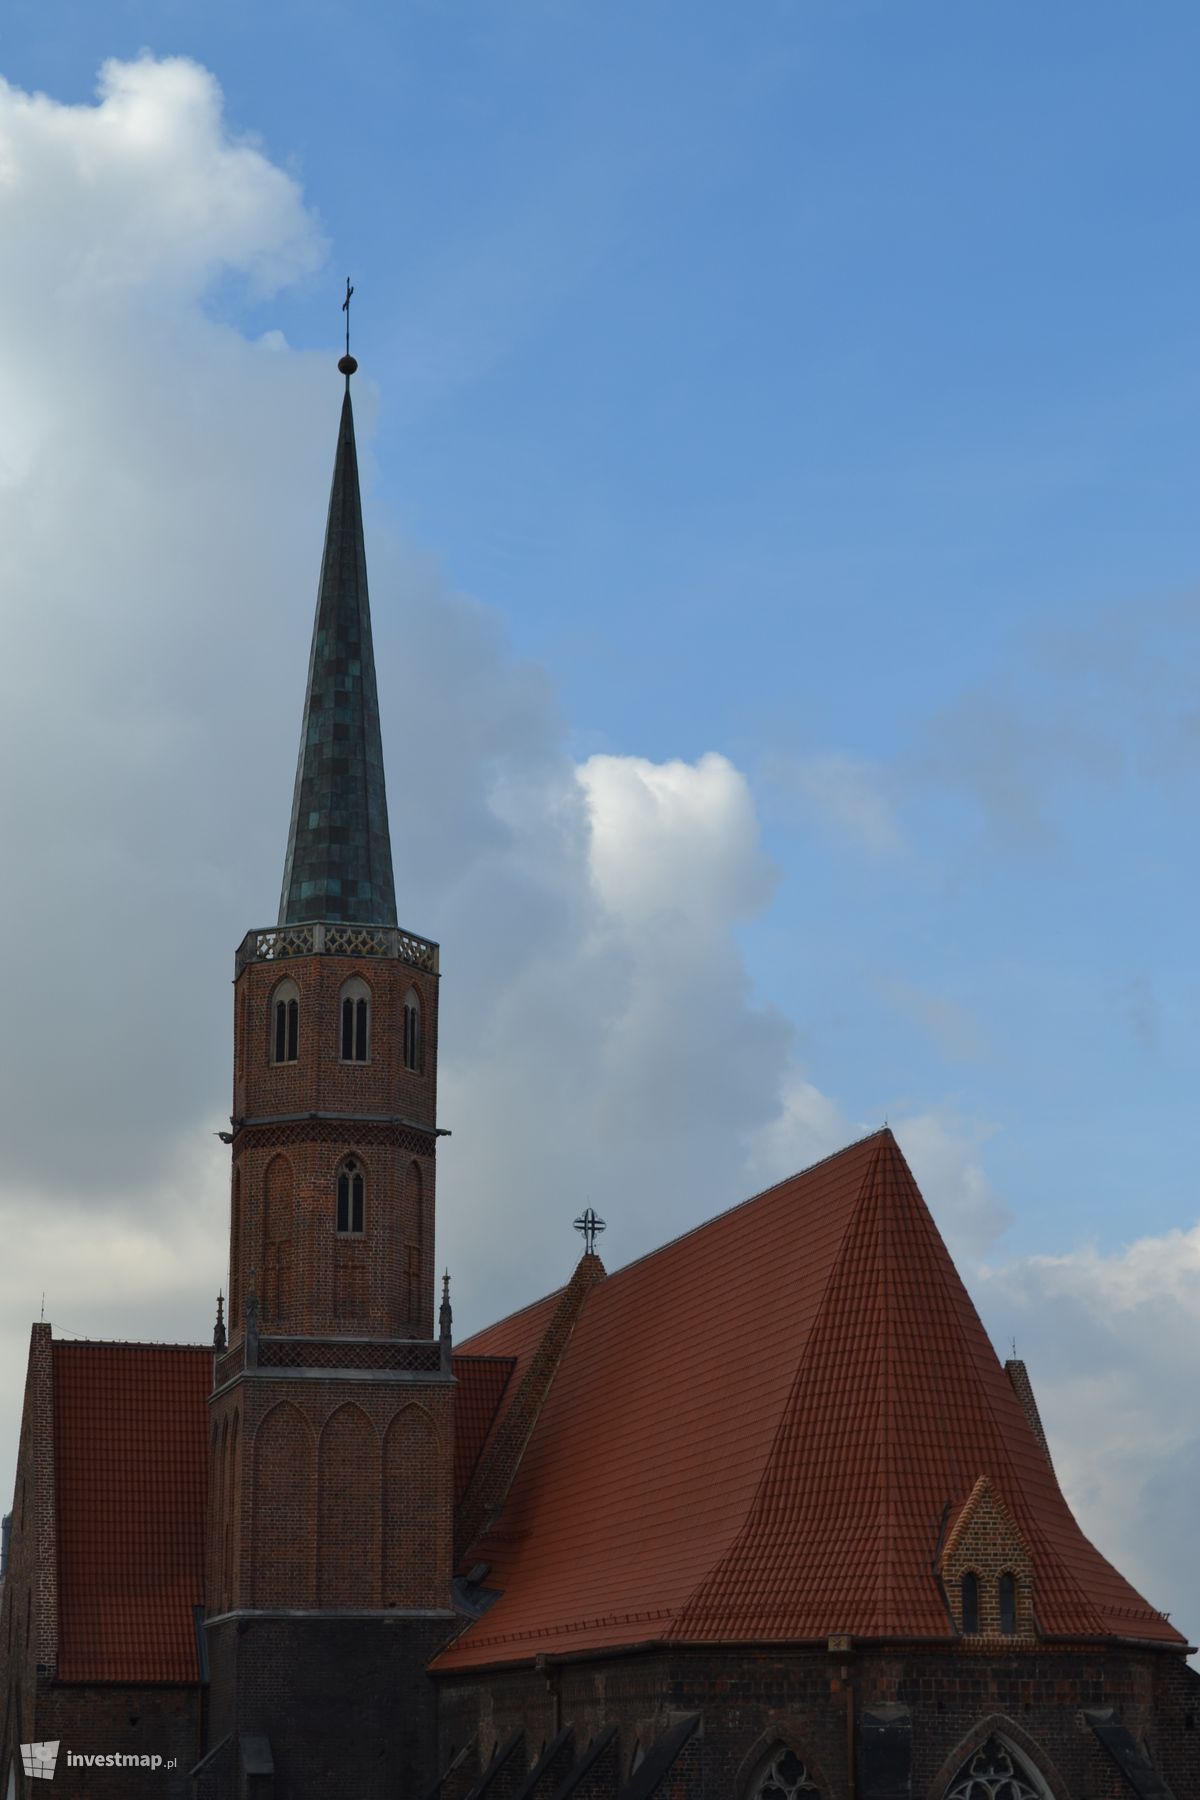 Zdjęcie [Wrocław] Kościół pw. św. Wojciecha fot. Jan Augustynowski